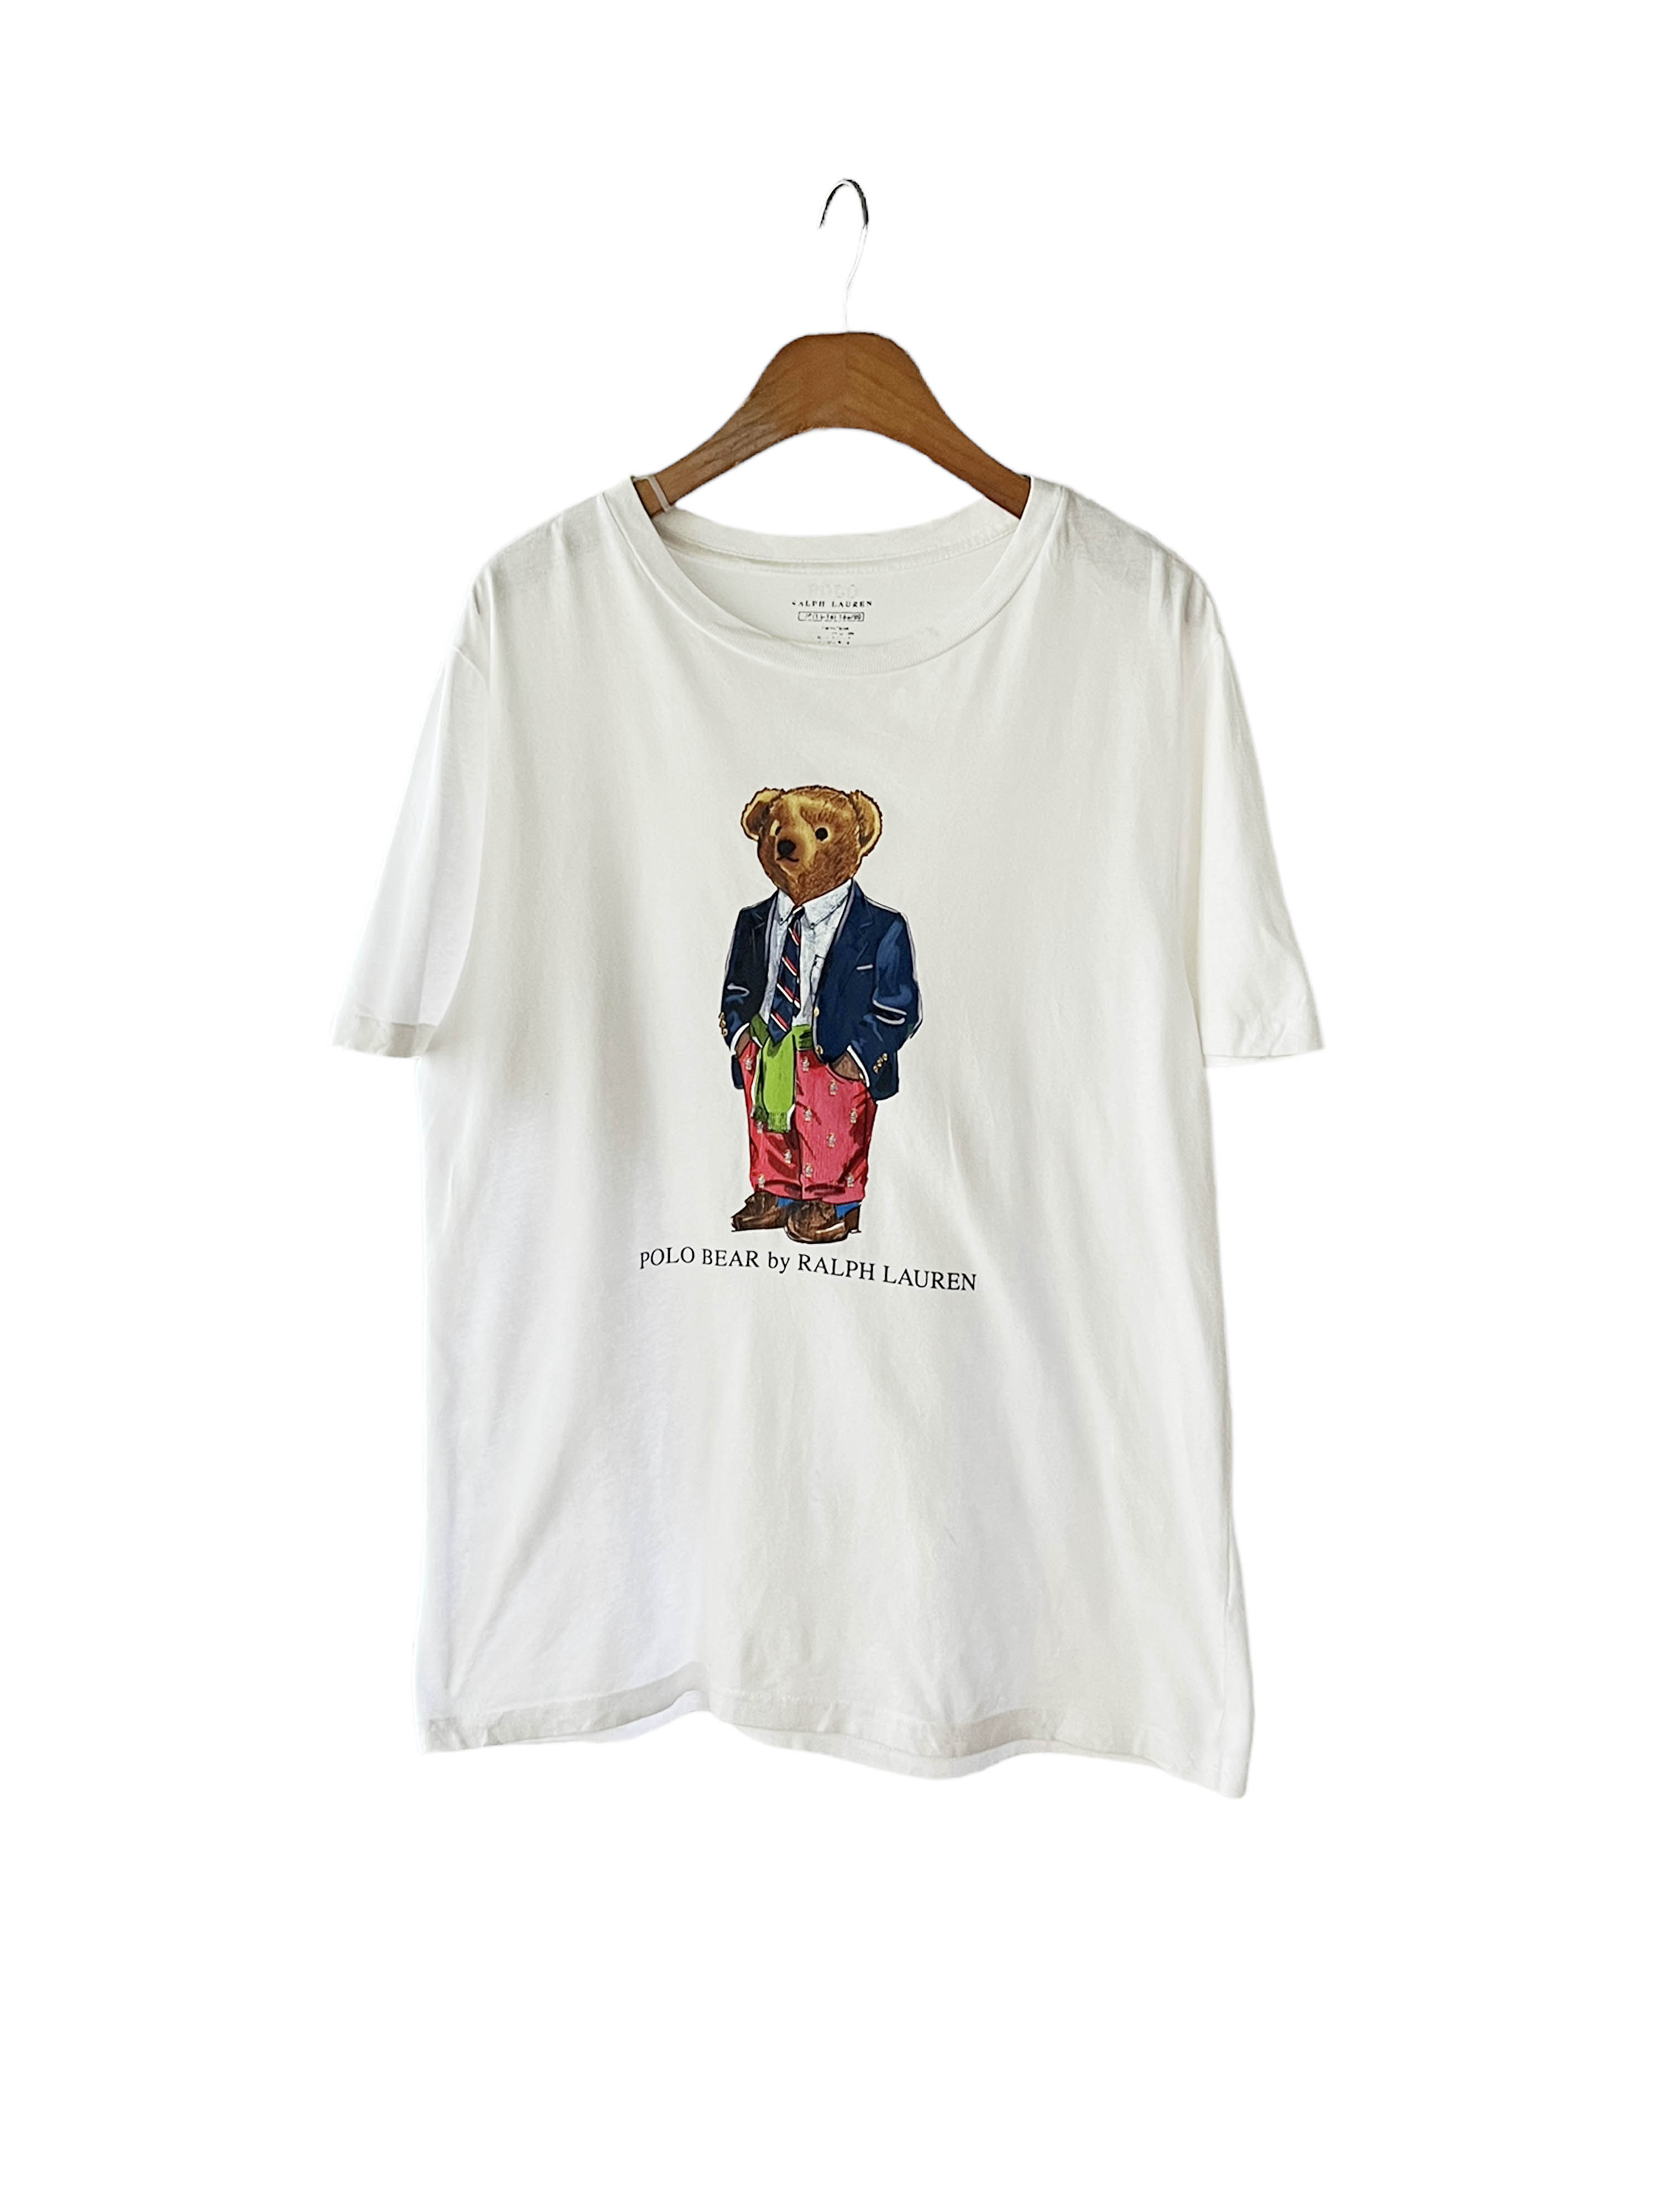 Polo ralph lauren bear t-shirts